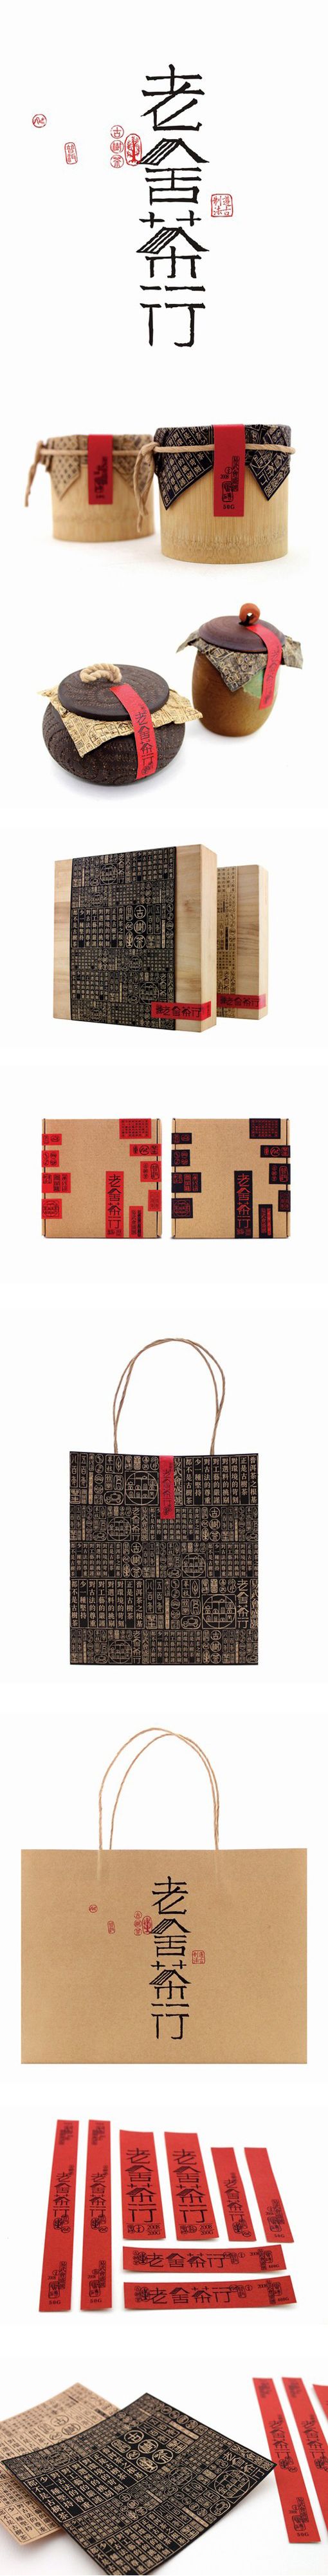 Asian inspired shopping #packaging #branding PD